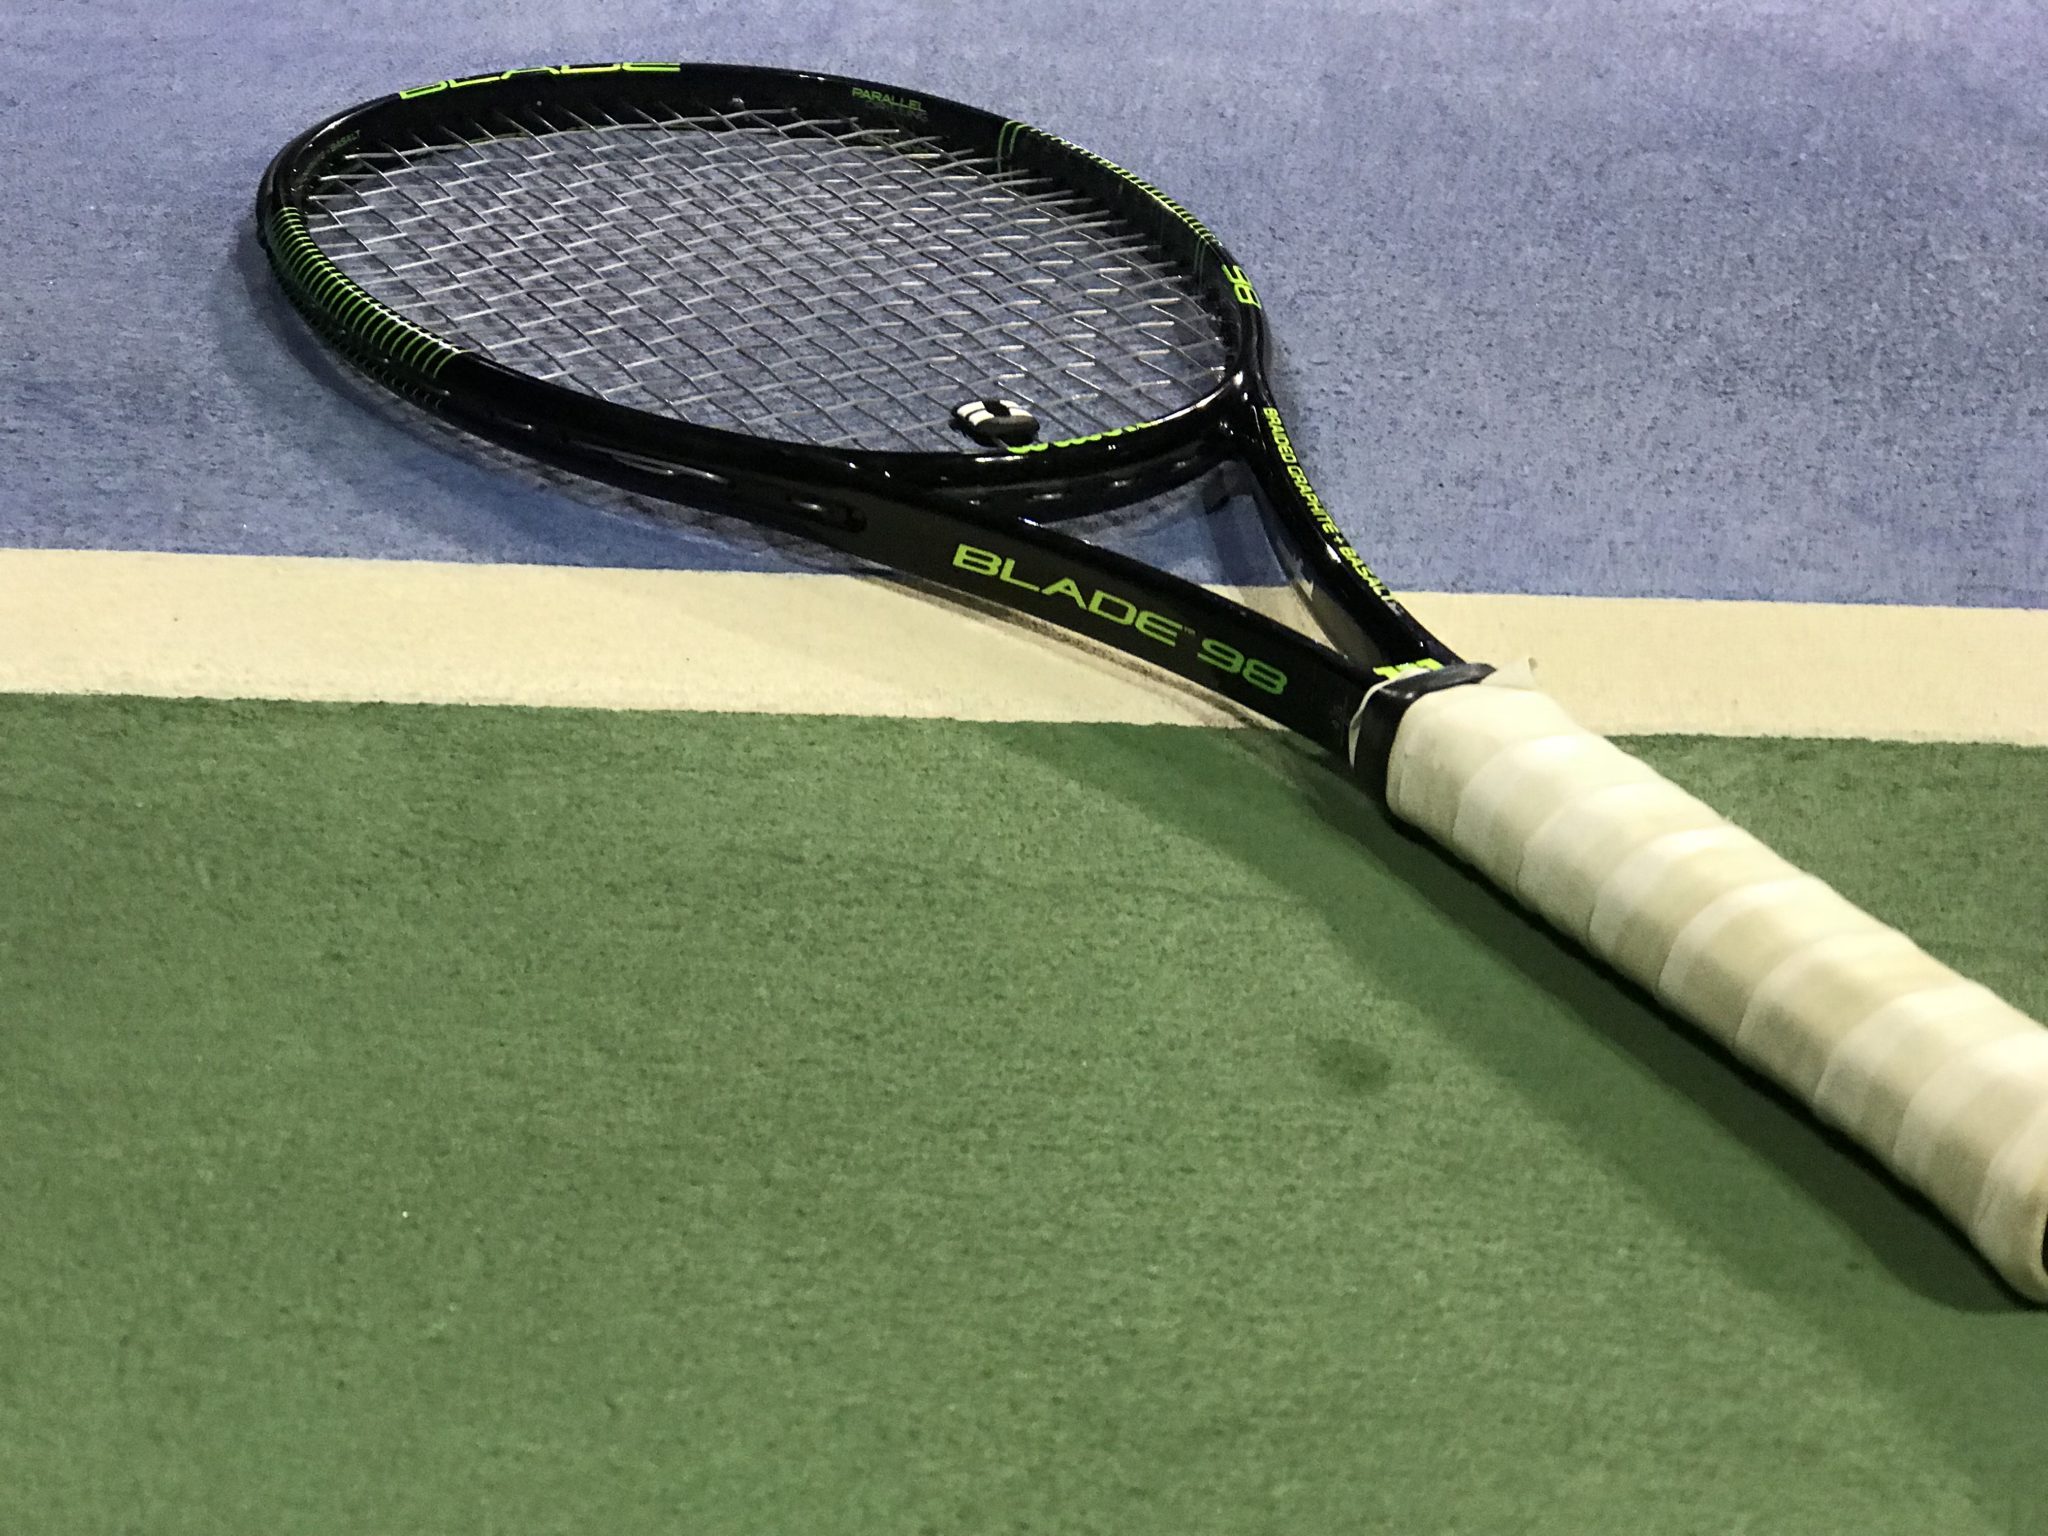 Bezem Liever long Wilson Blade 98 Pro Stock Racquet Review - Tennisnerd.net